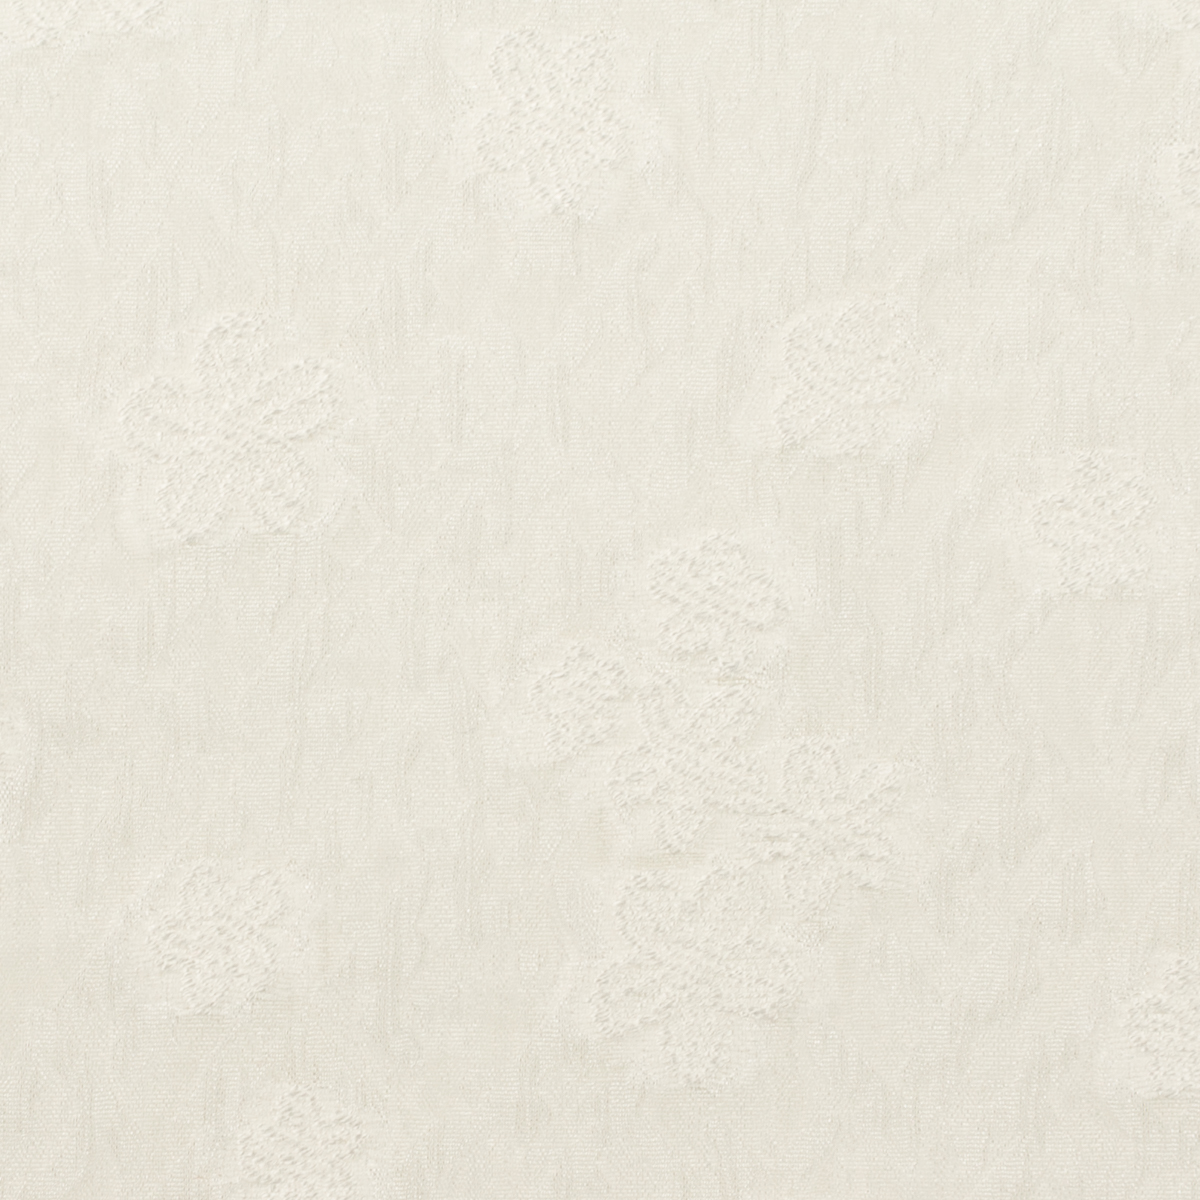 【アウトレット】ポリエステル混×フラワー(オフホワイト)×オーガンジー・カットジャガードのサムネイル